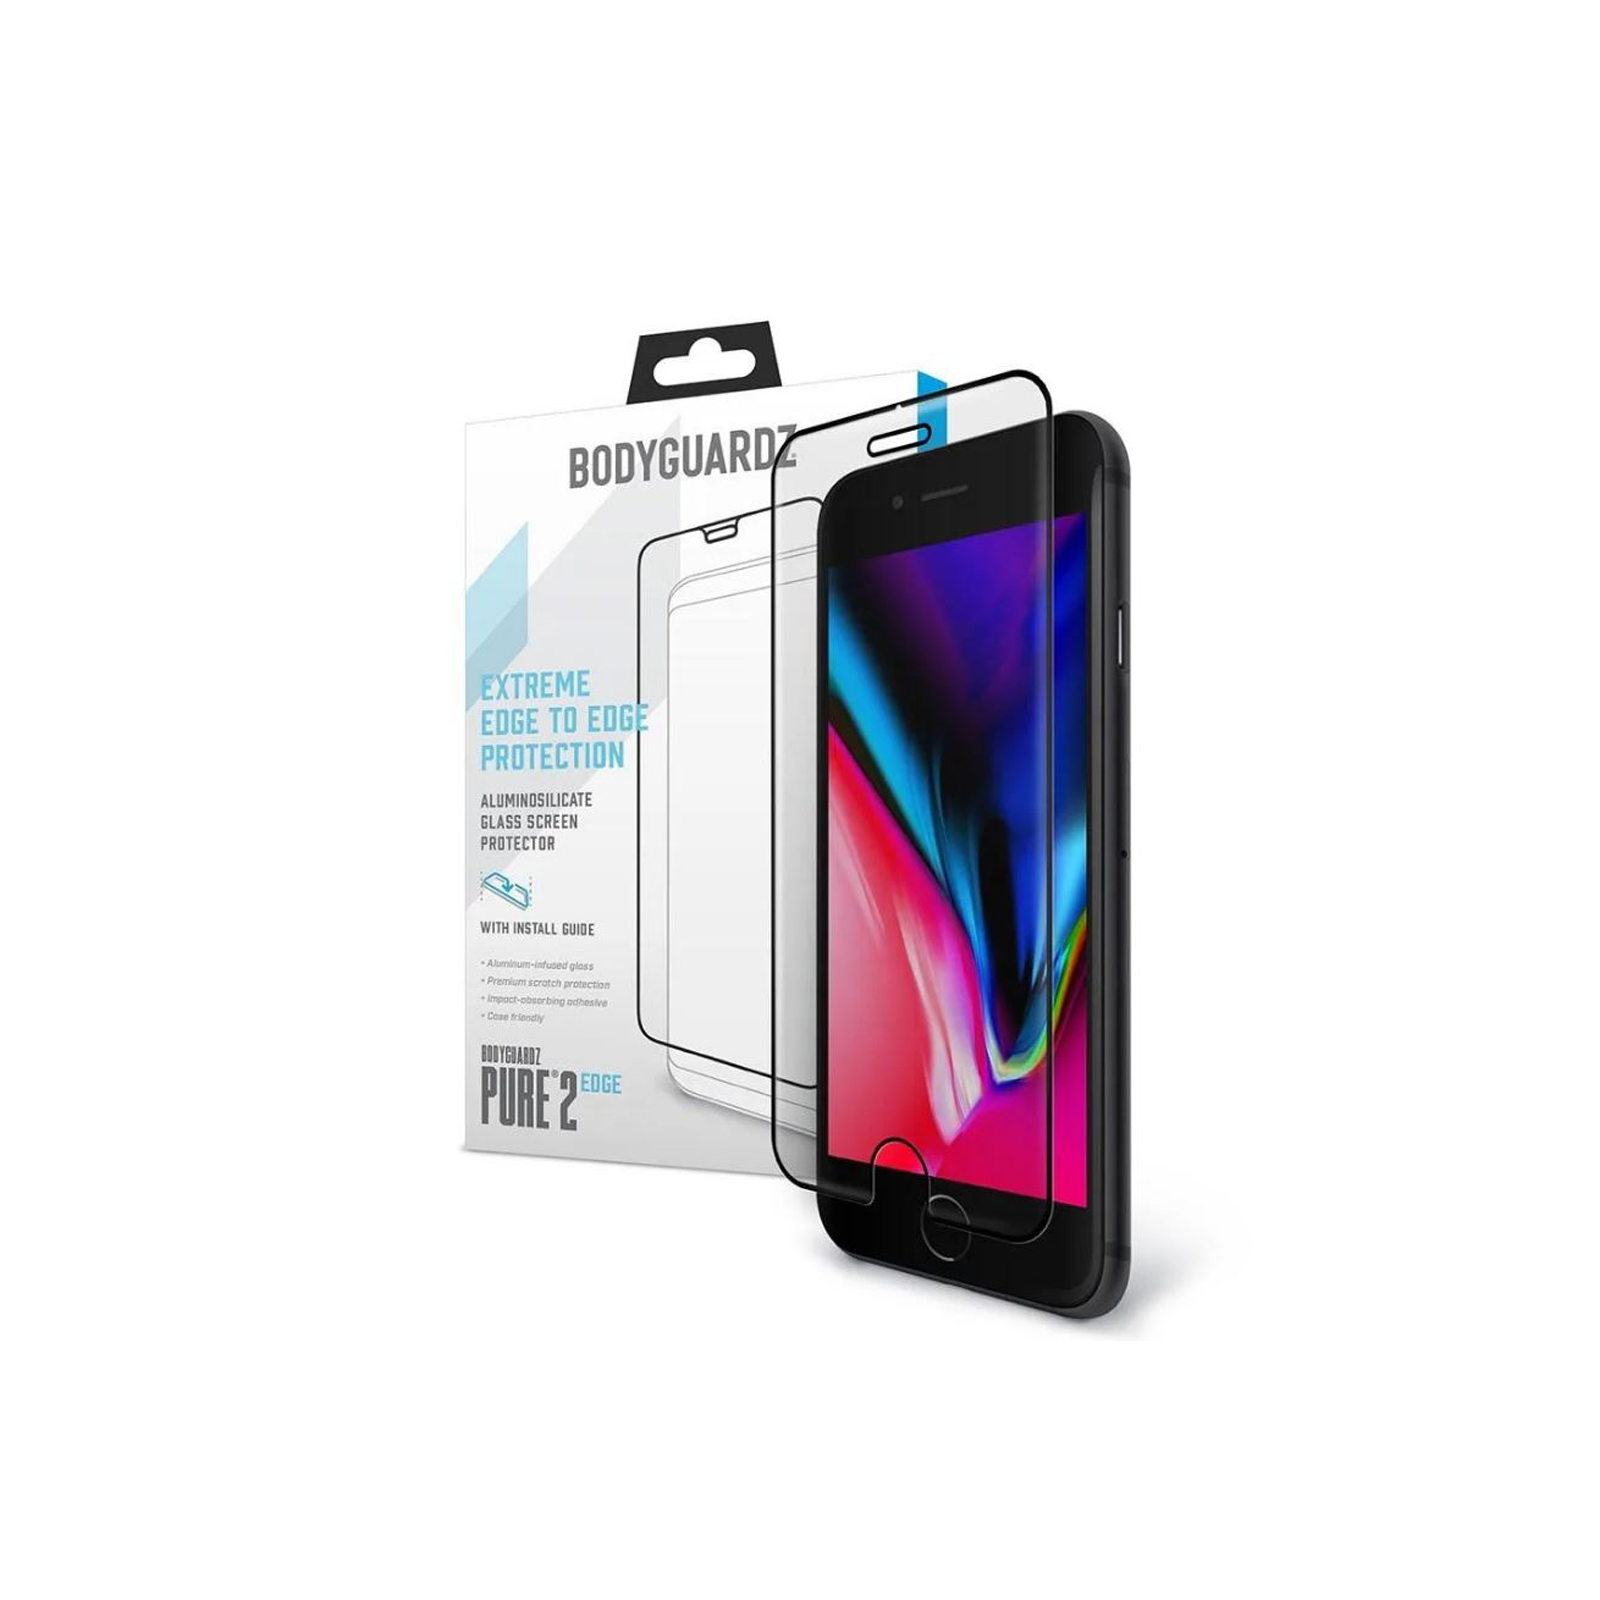 BodyGuardz Sceenpure Glass iPhone 6+/6s+ Screen Protector Brand New